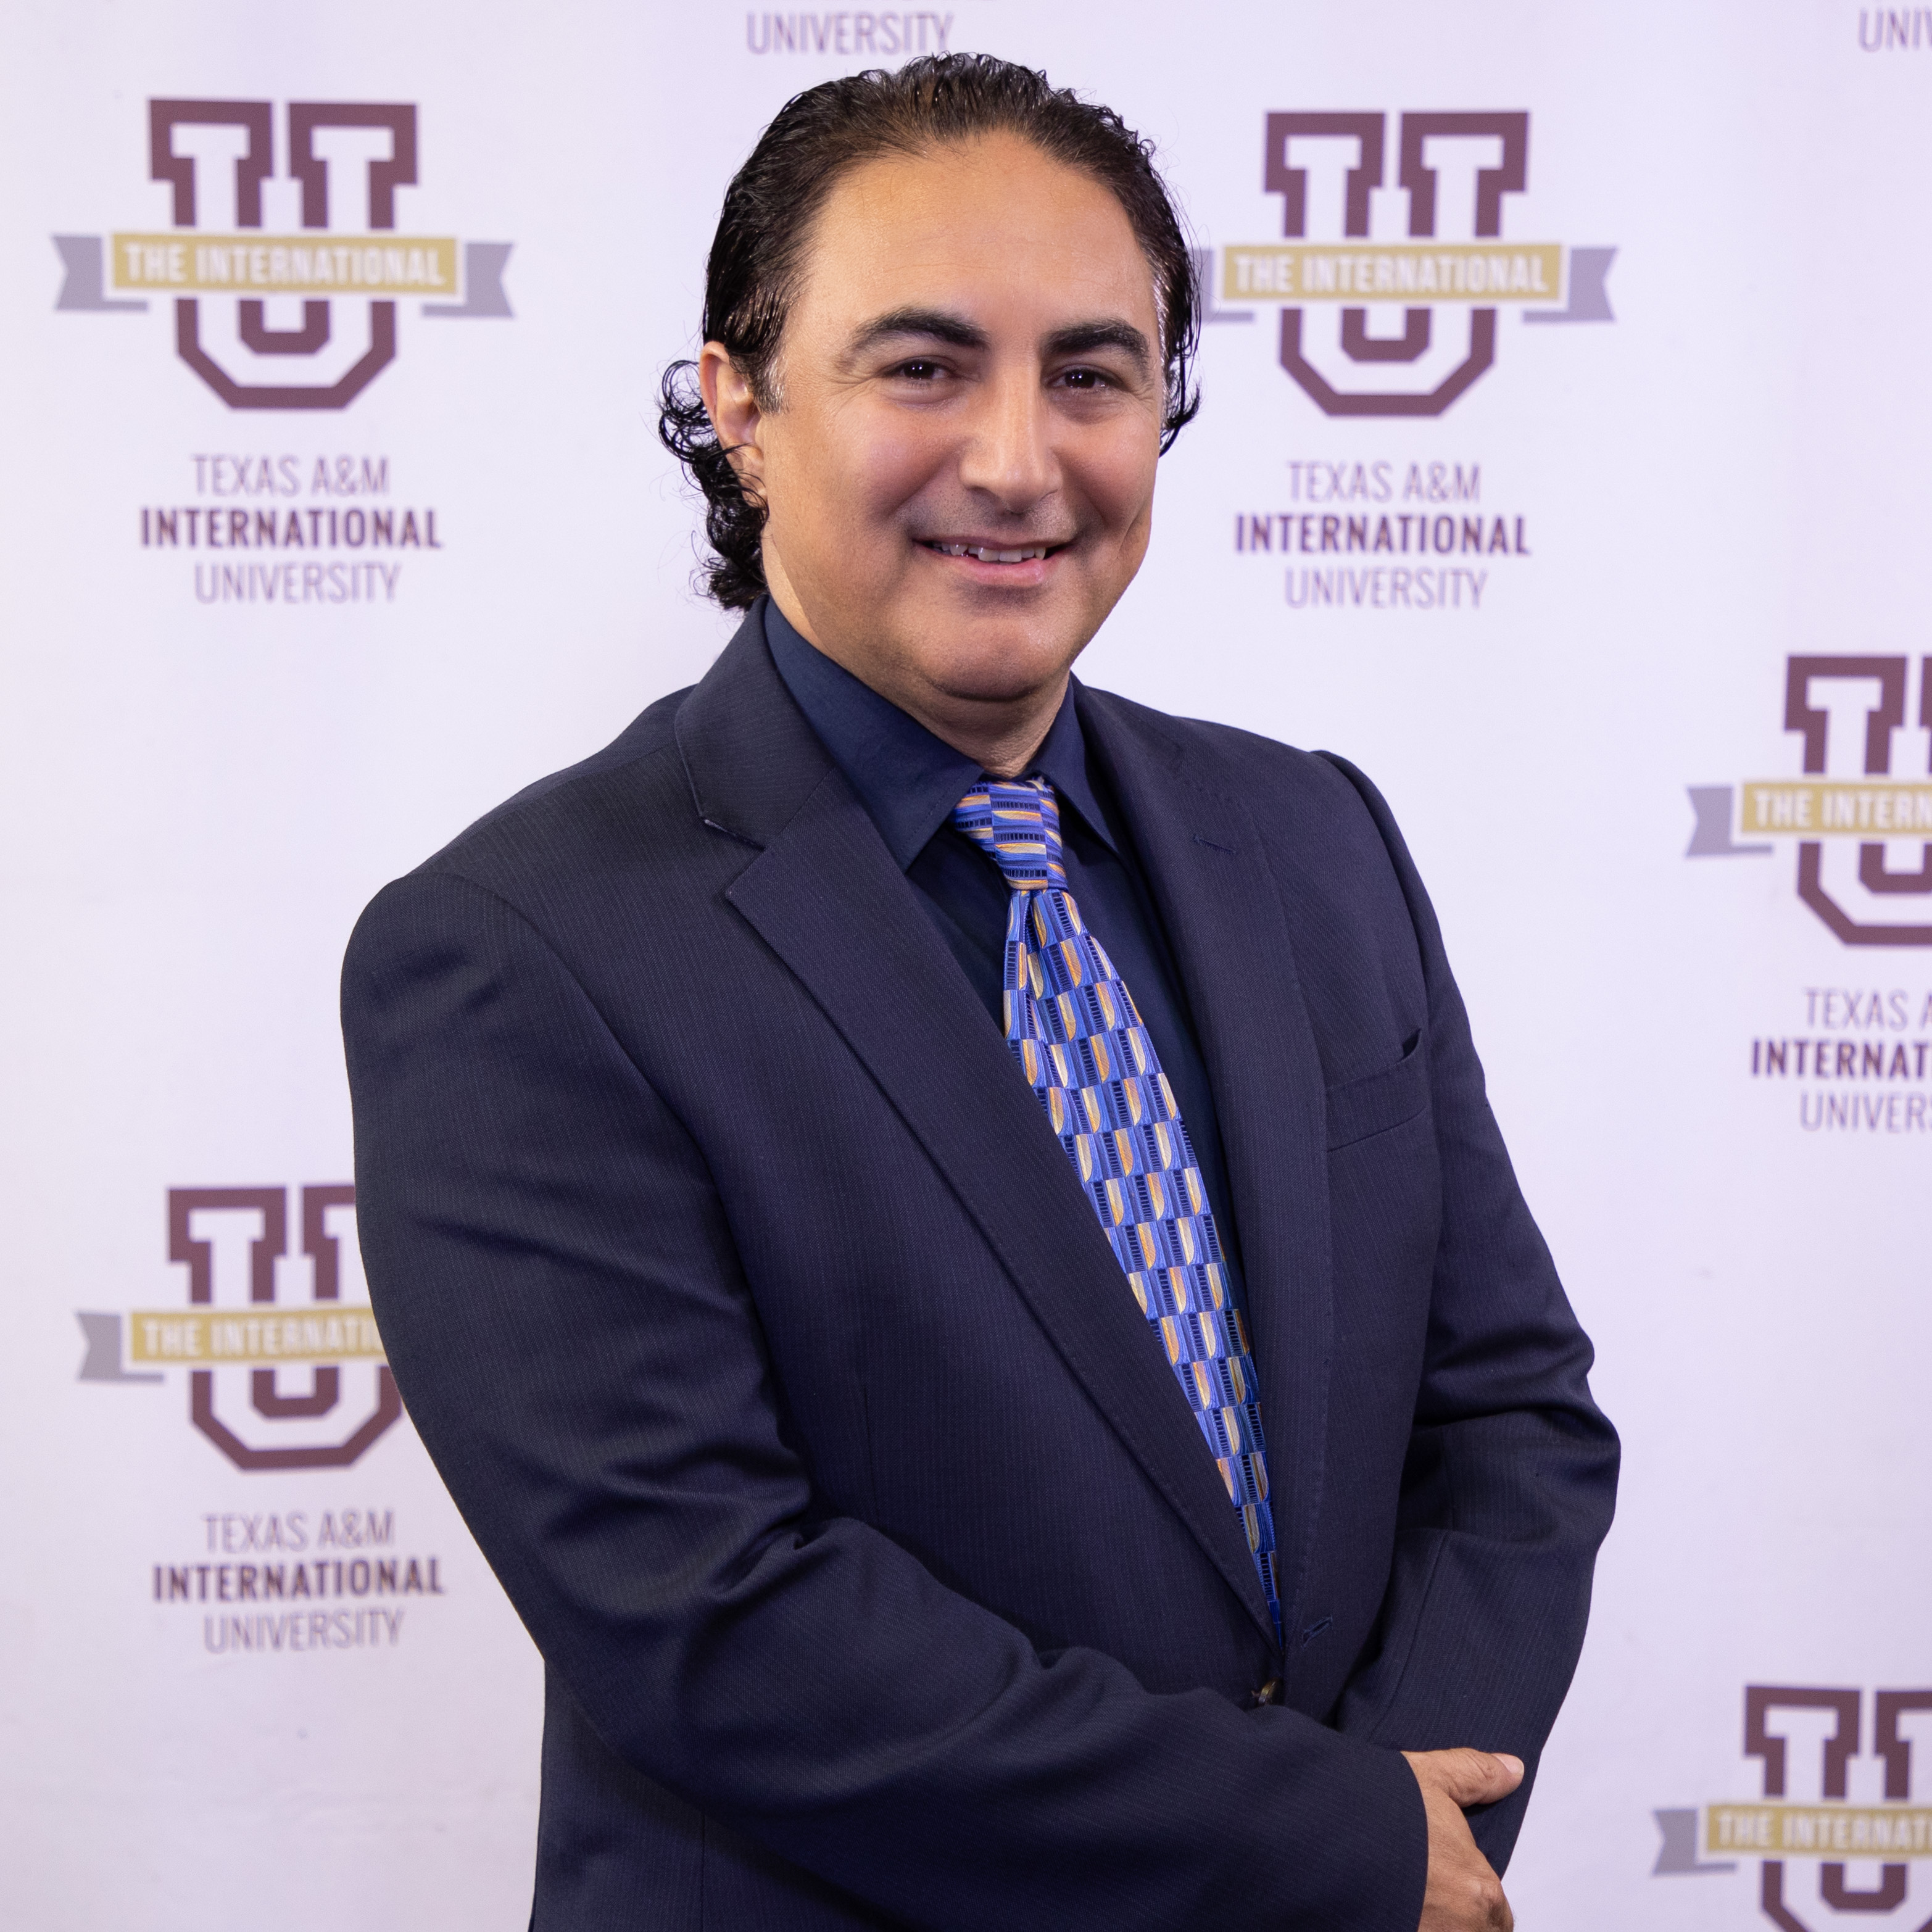 Dr. Khaled Almustafa